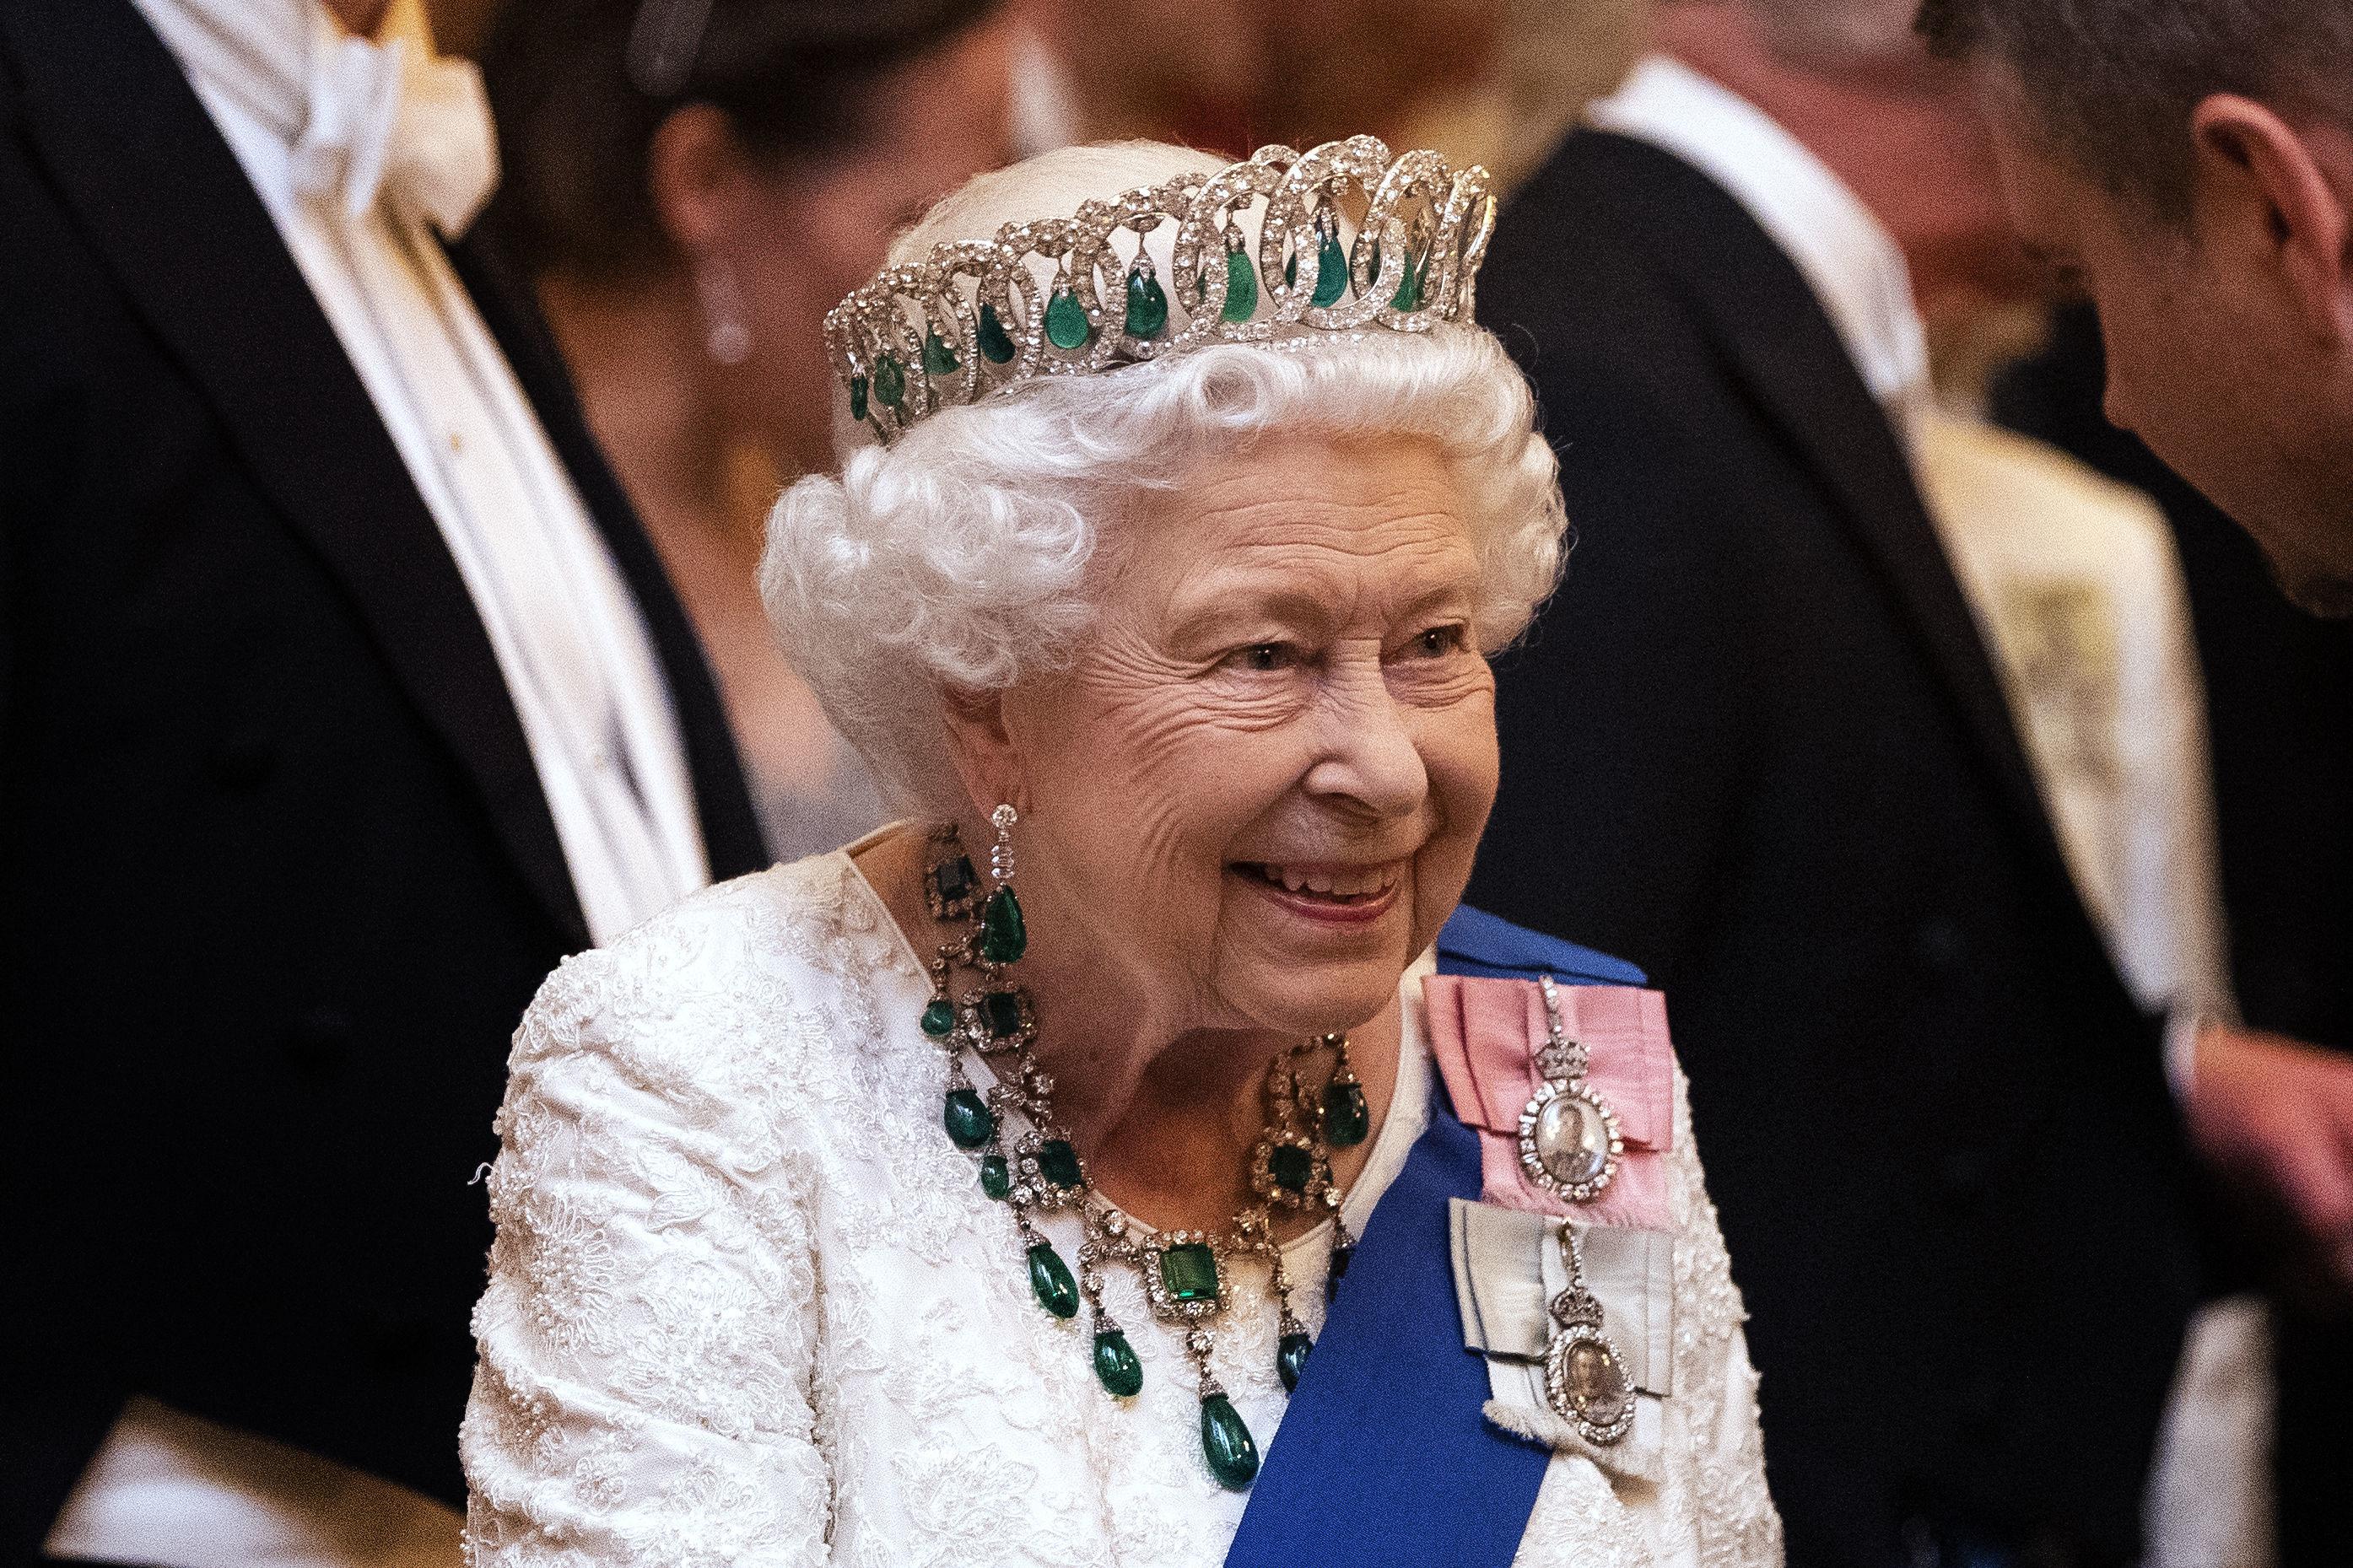 La reine Elizabeth fête ses 94 ans confinée - Femmes d ...